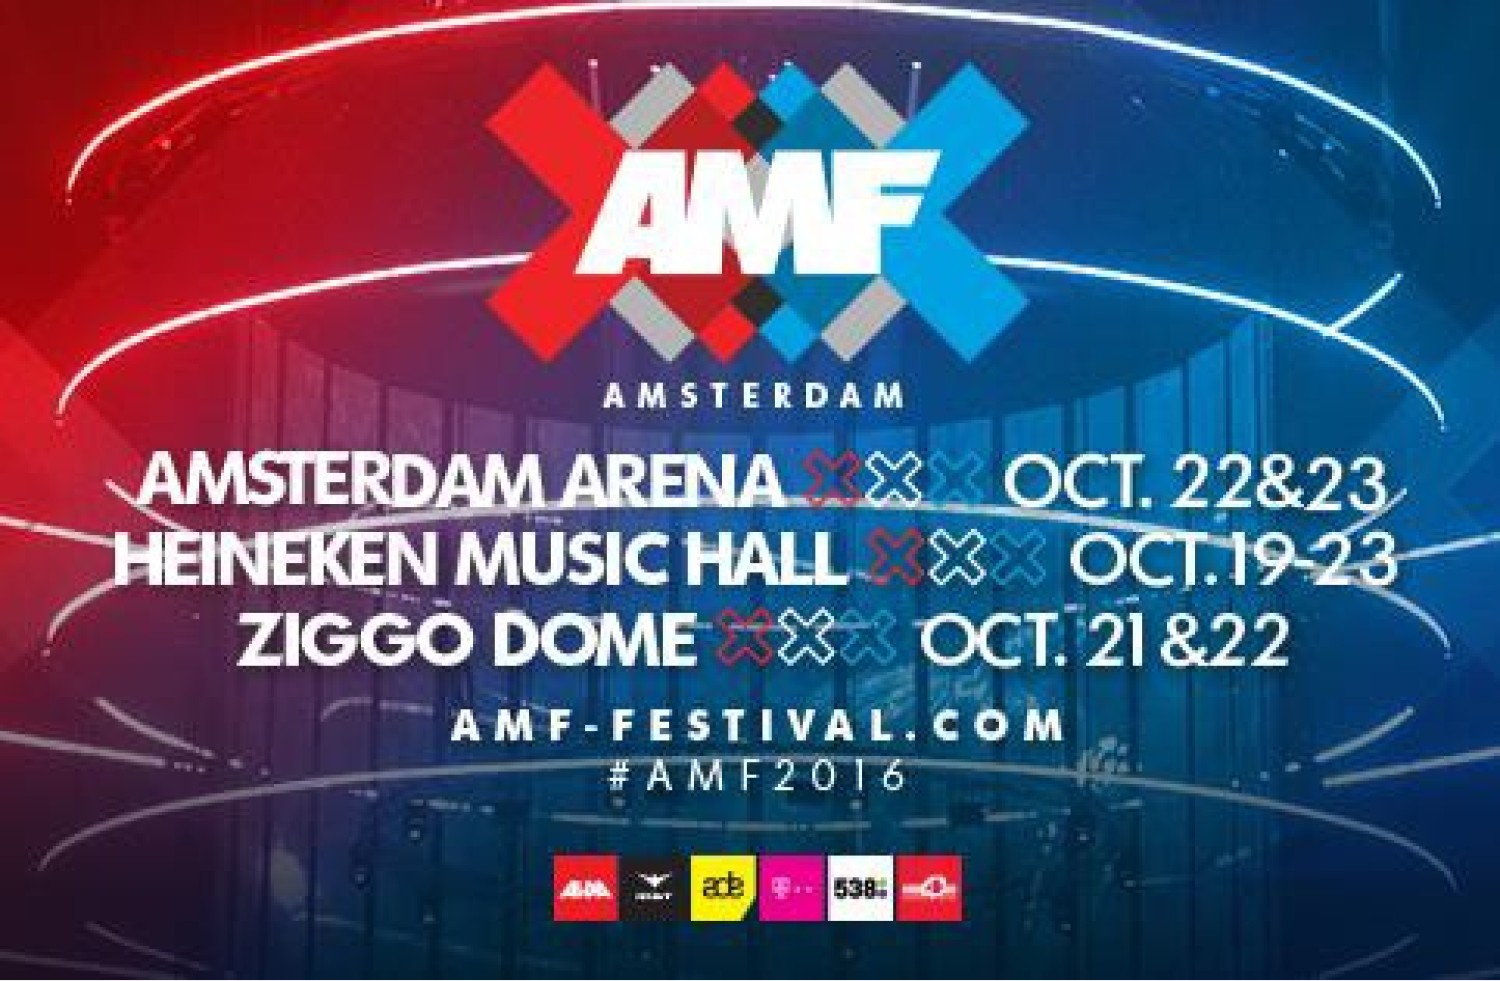 Party nieuws: Wereldtop dj's komen naar vijfdaags AMF festival!